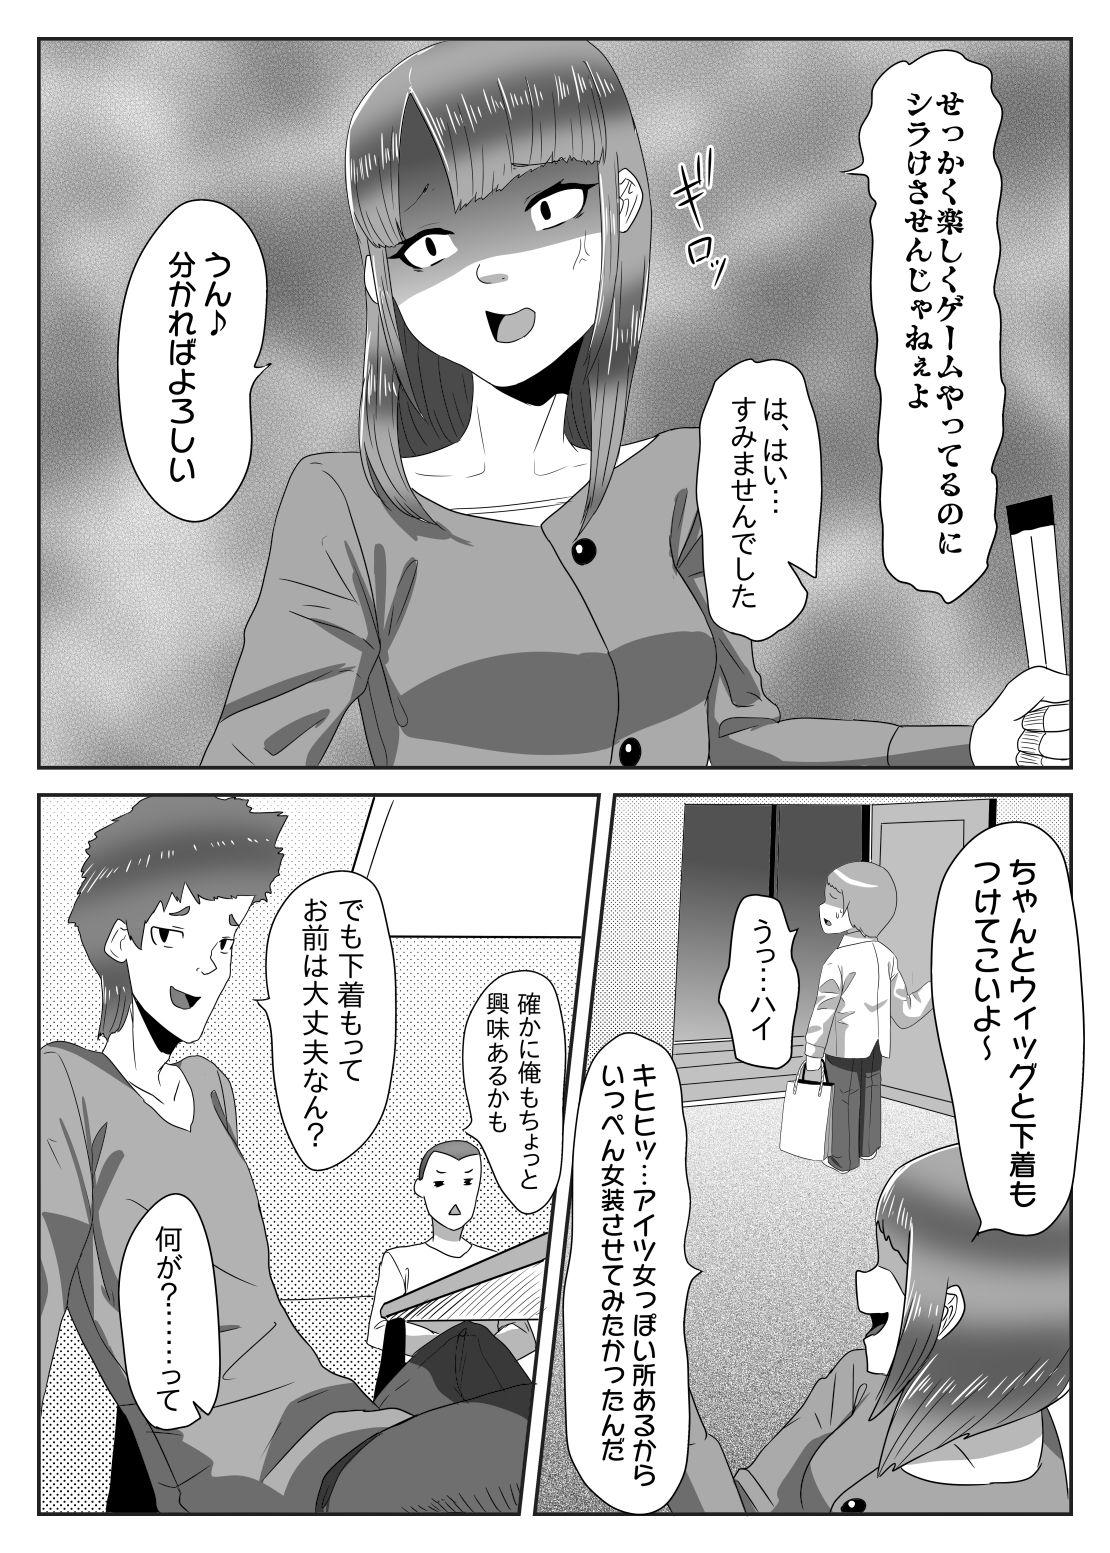 Street Batsu gēmu de josō sanpo sa se rarete itara ikemen futanari musume ni tasuke raremashita - Original Crossdresser - Page 5